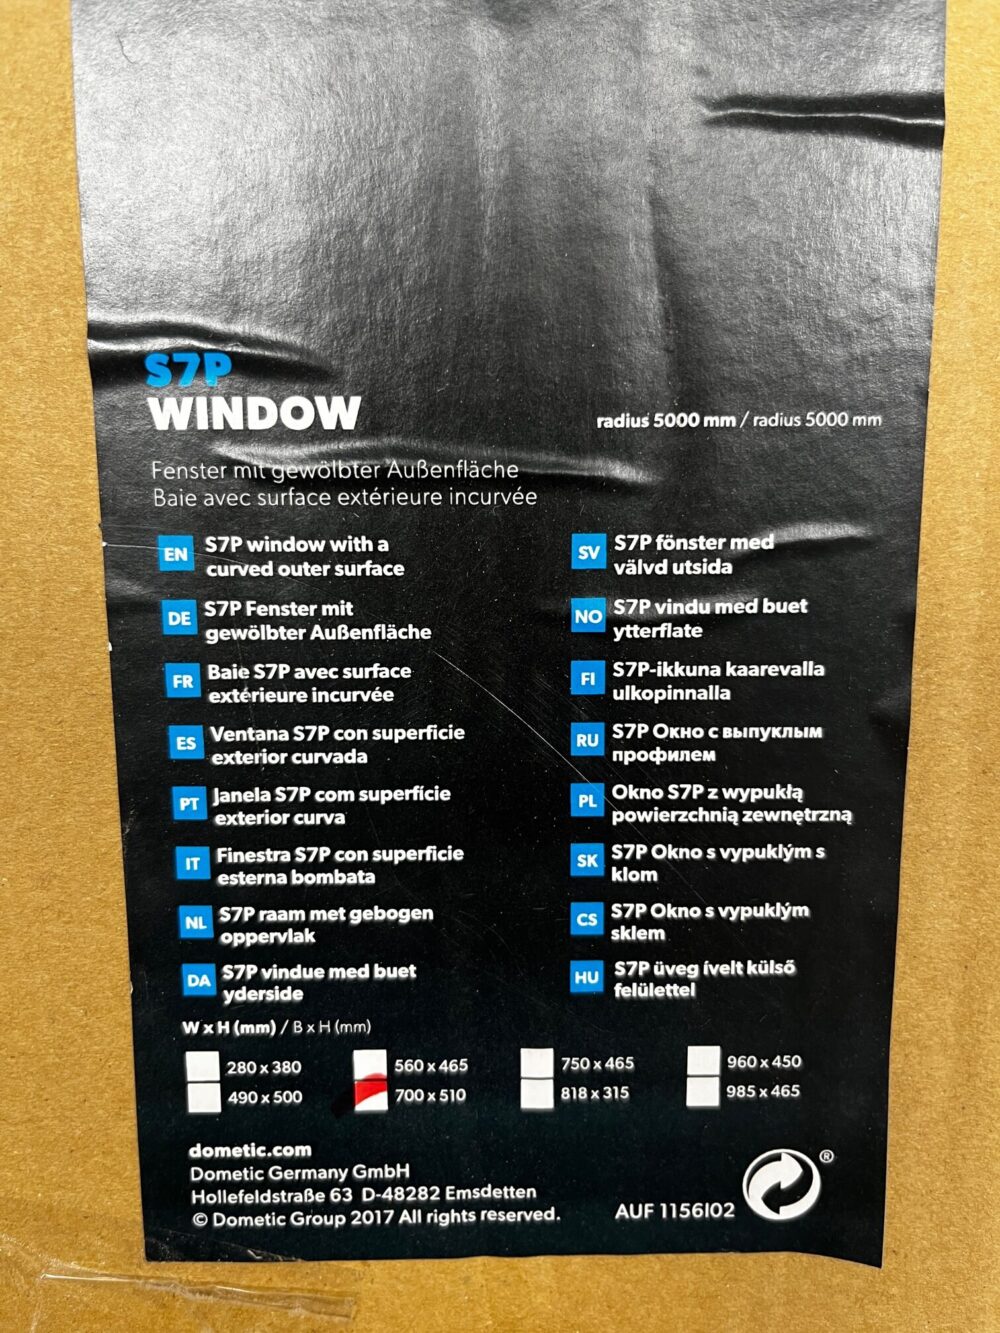 Dometic S7P Fenster mit gewölbter Außenfläche 700x510